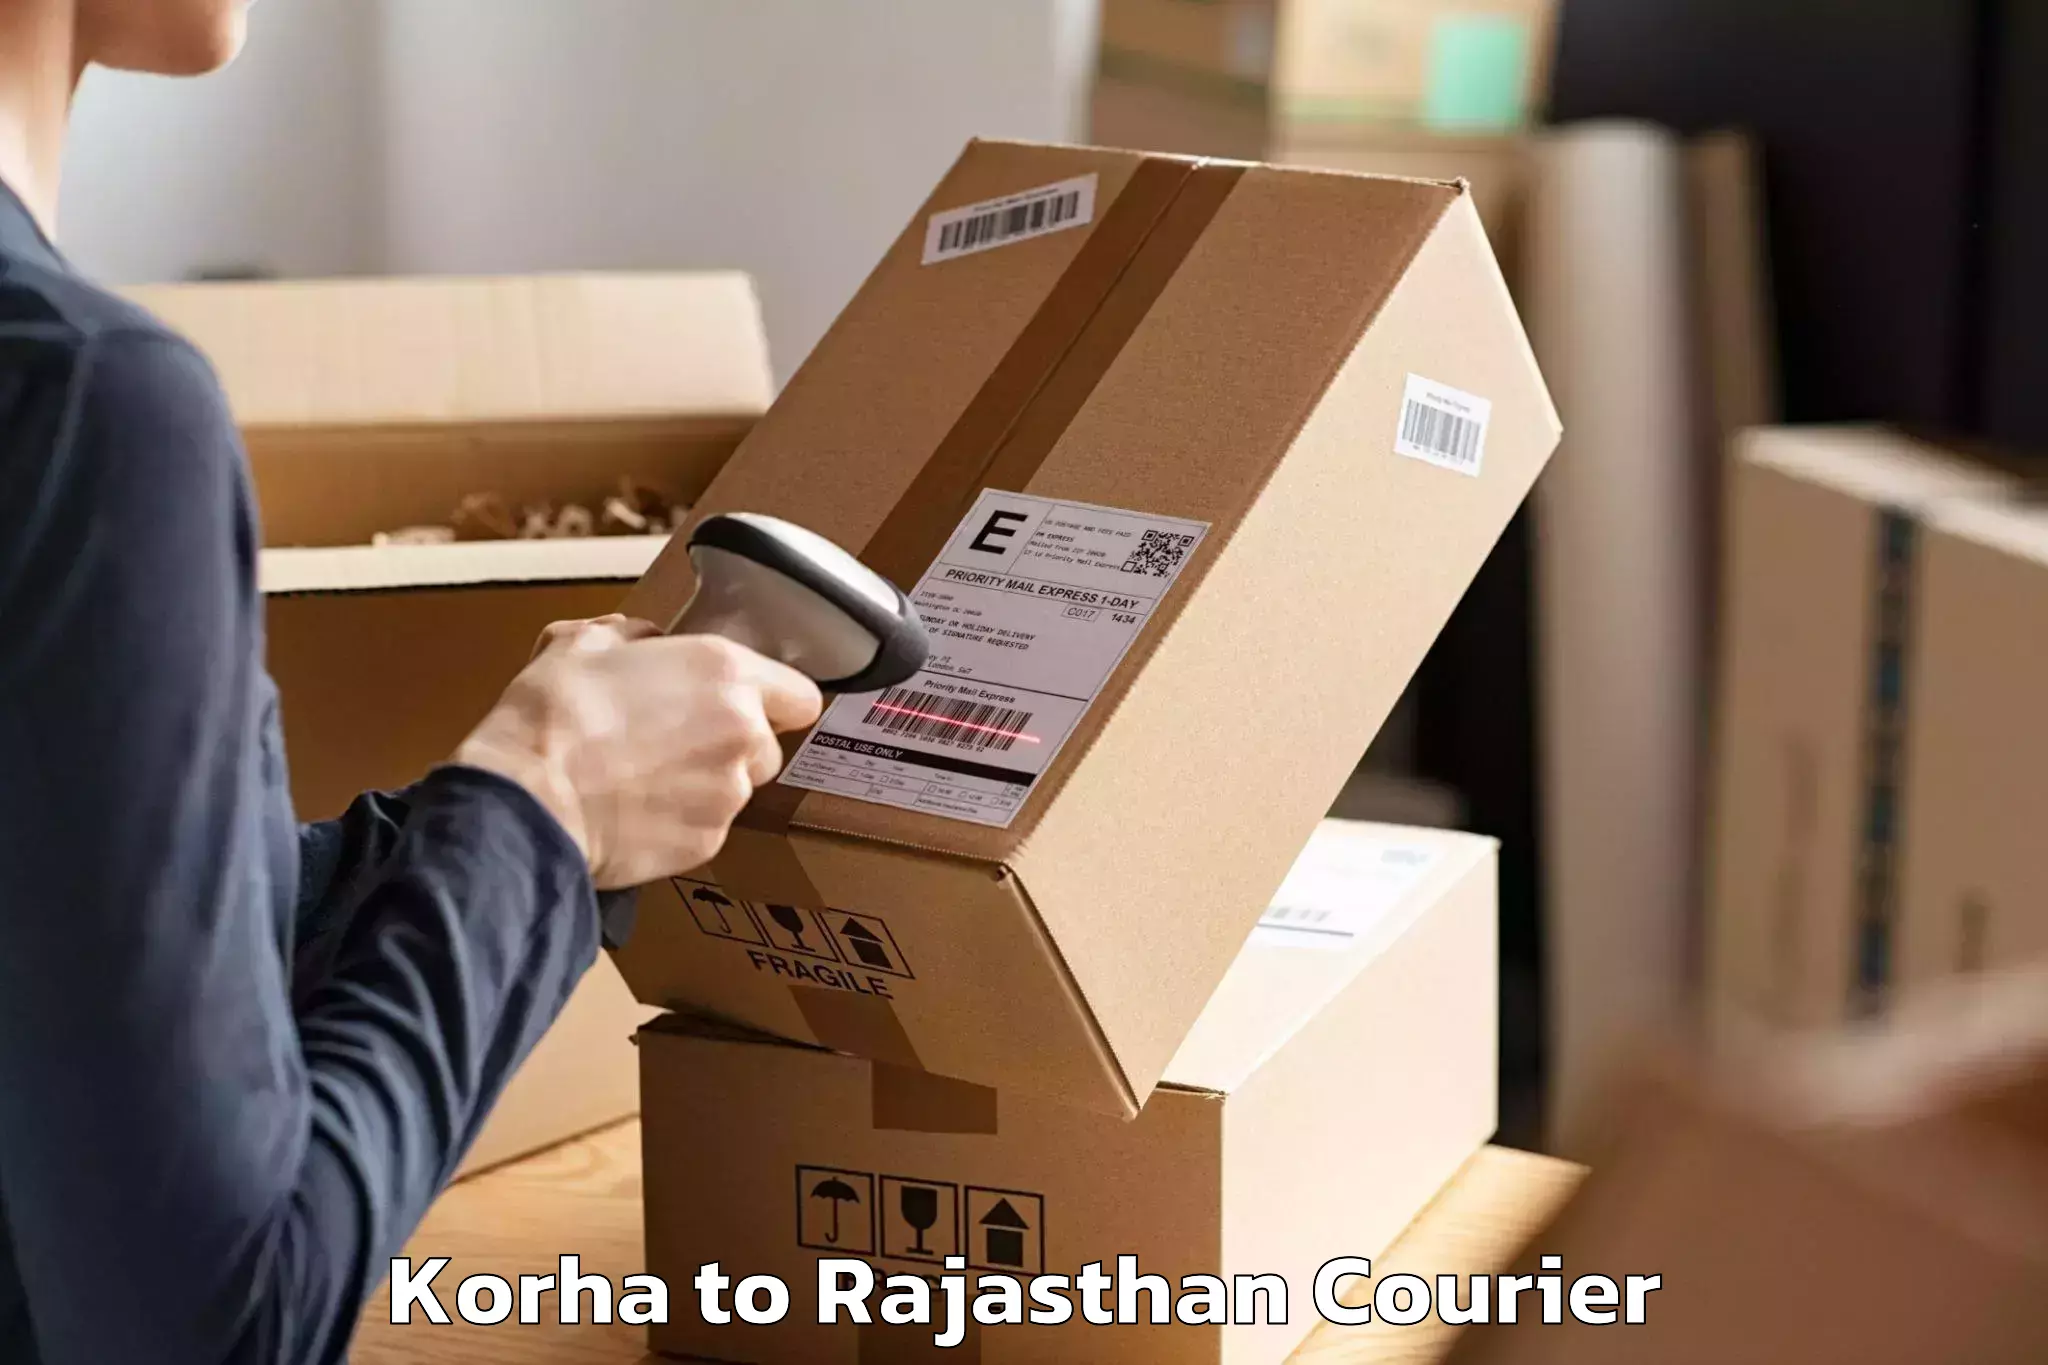 Household goods transporters Korha to Sambhar